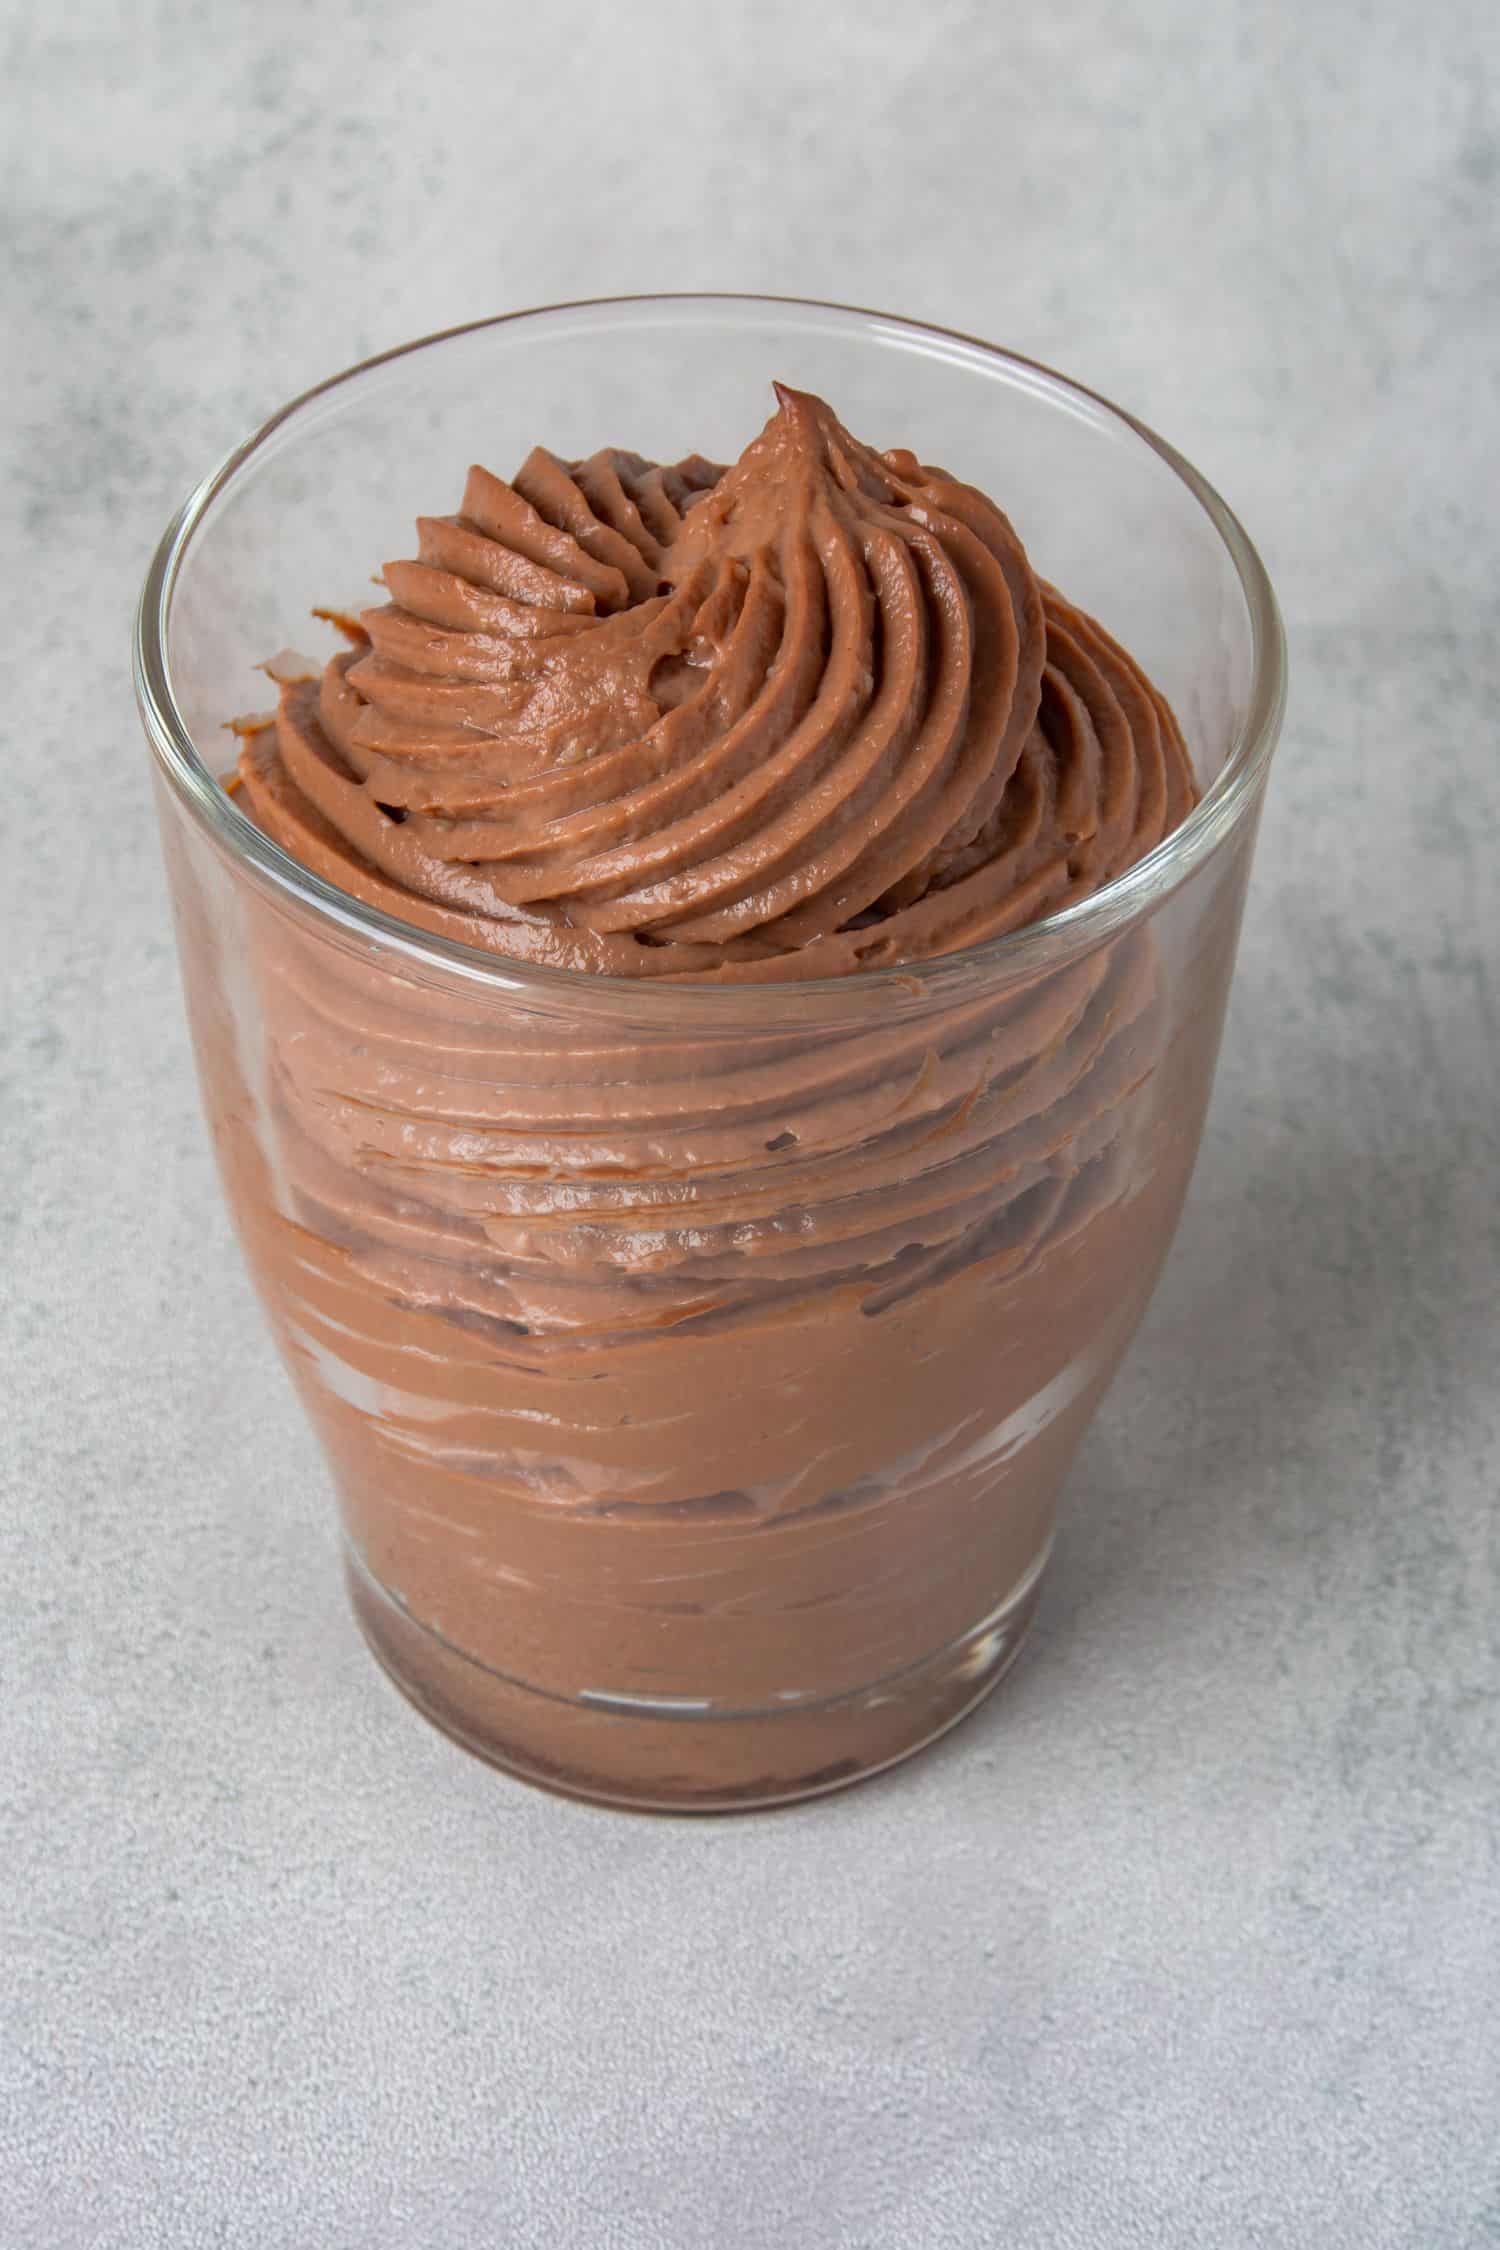 Chocolate cream in a glass.